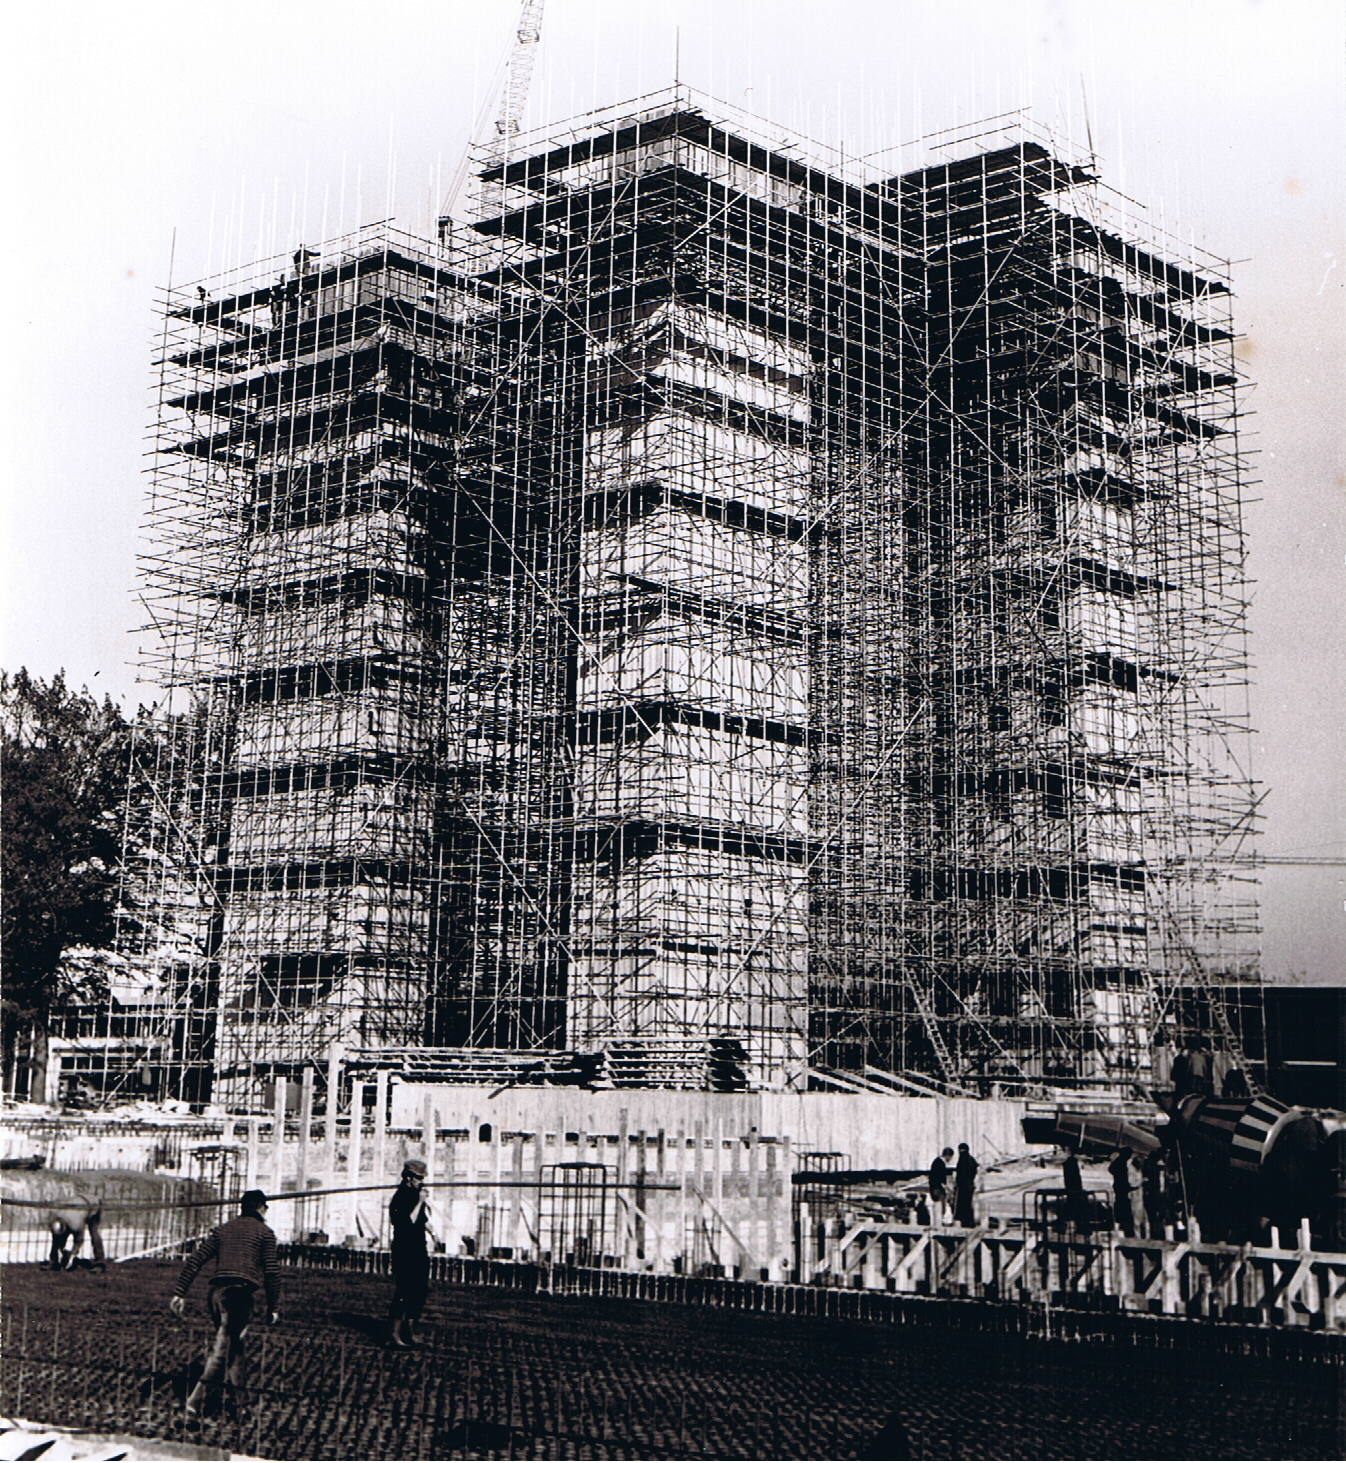 In 1964 realiseerde Unica een aantal grote, in die tijd bijzonder grote projecten: zo realiseerde Unica de HTS Zwolle, de Scania-fabriek en de Technische Hogeschool Twente. 